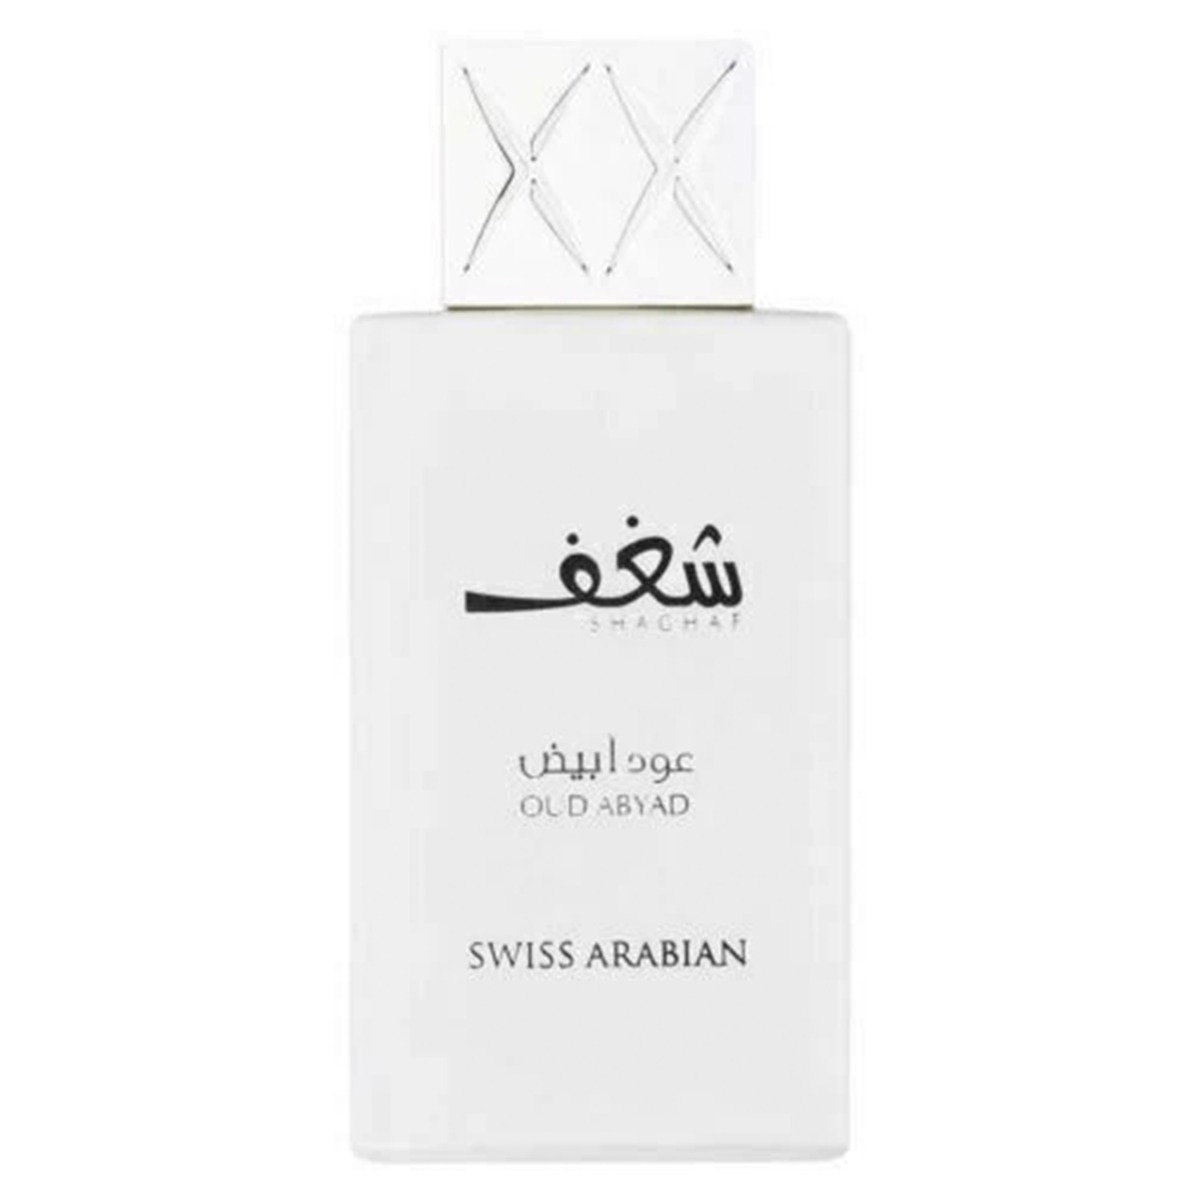 Swiss Arabian Shaghaf Oud Abyad 985 Perfume, 75ml